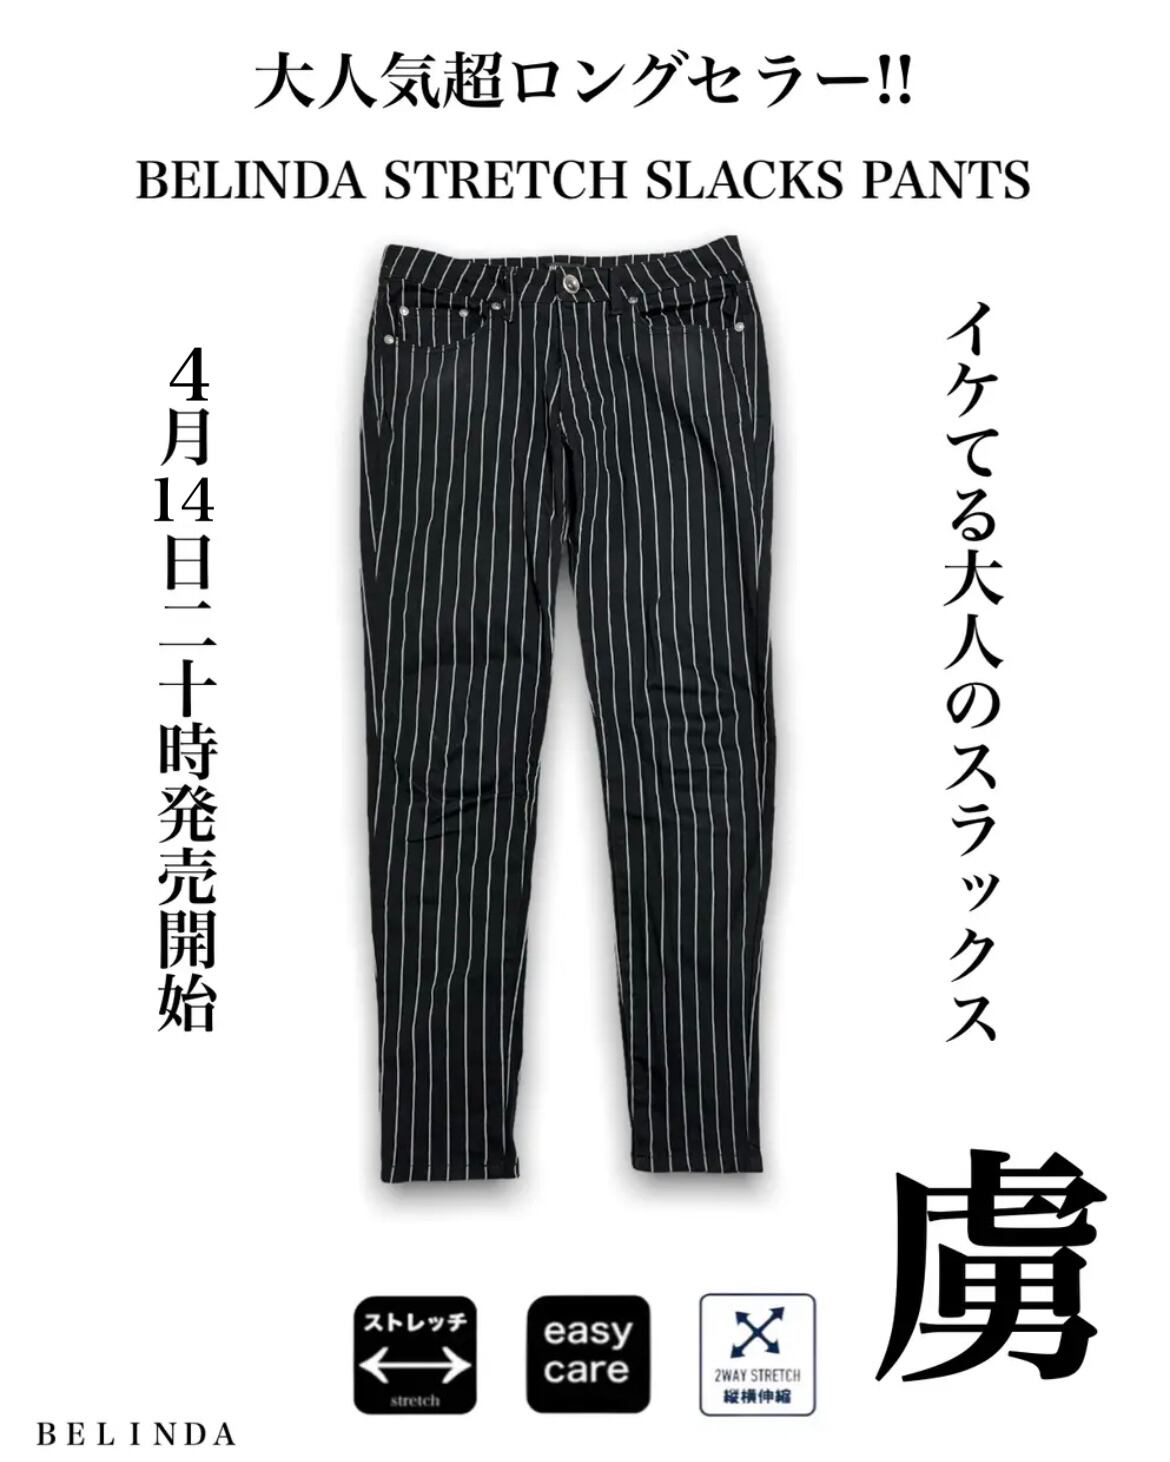 BELINDA STRETCH SLACKS PANTS | BELINDA OFFICIAL